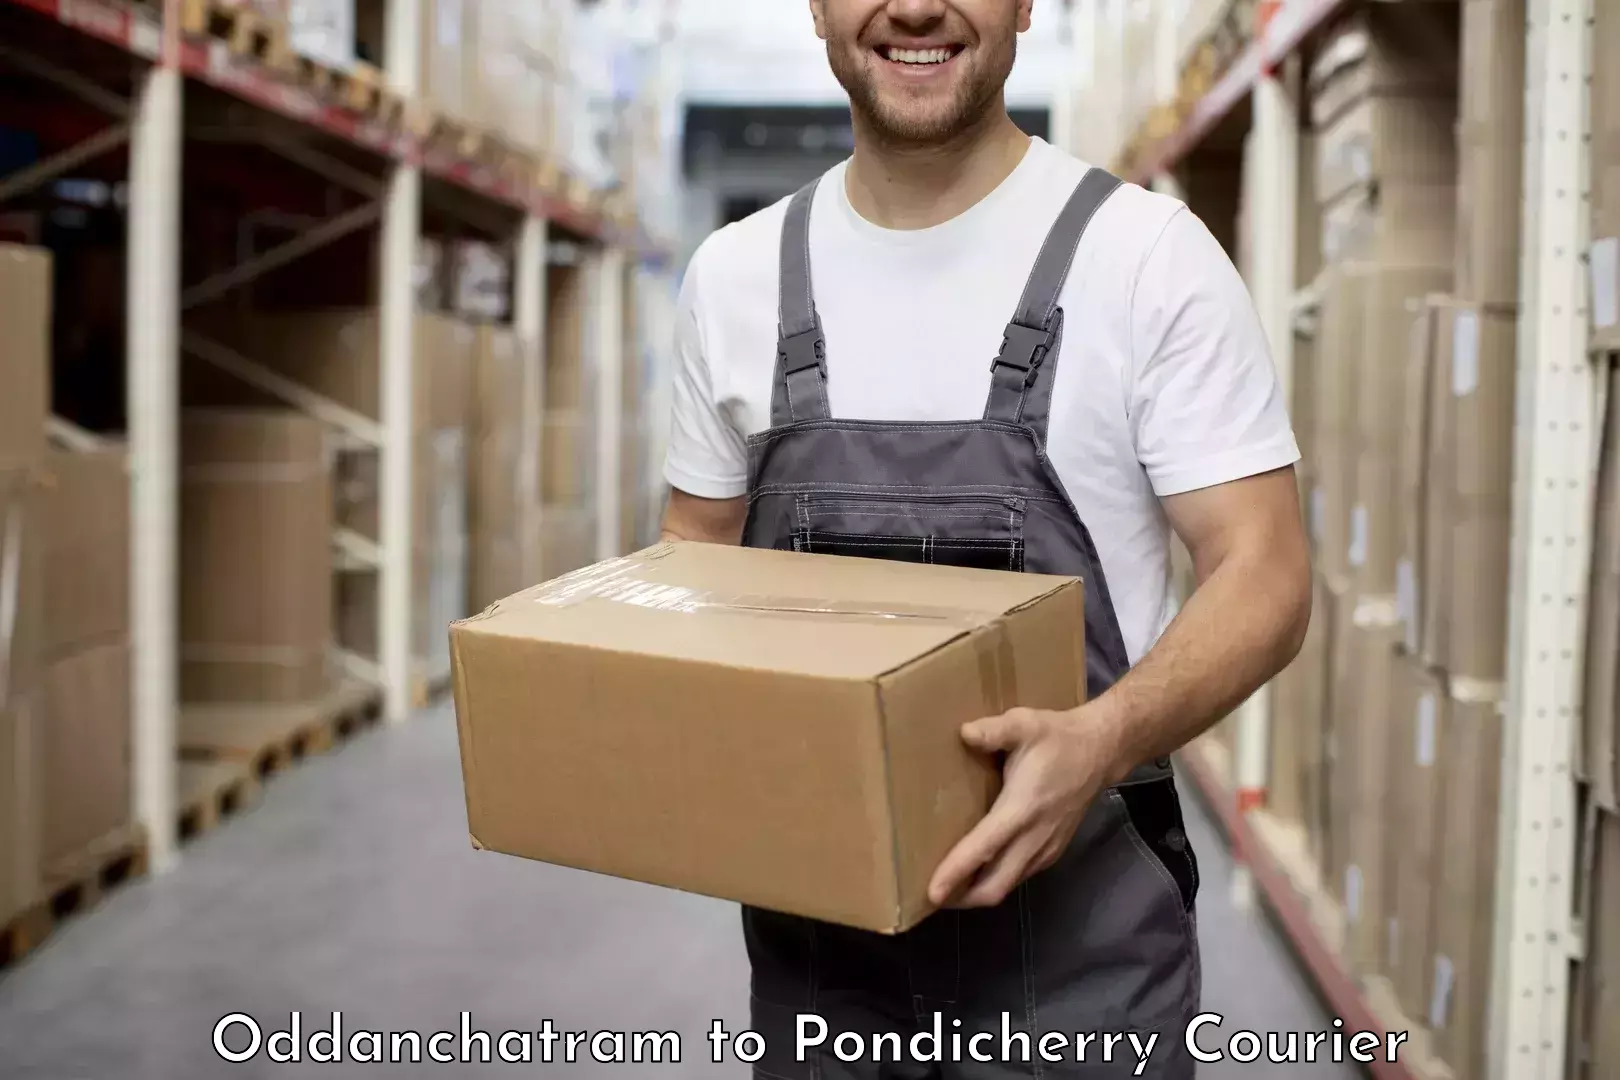 Return courier service Oddanchatram to Pondicherry